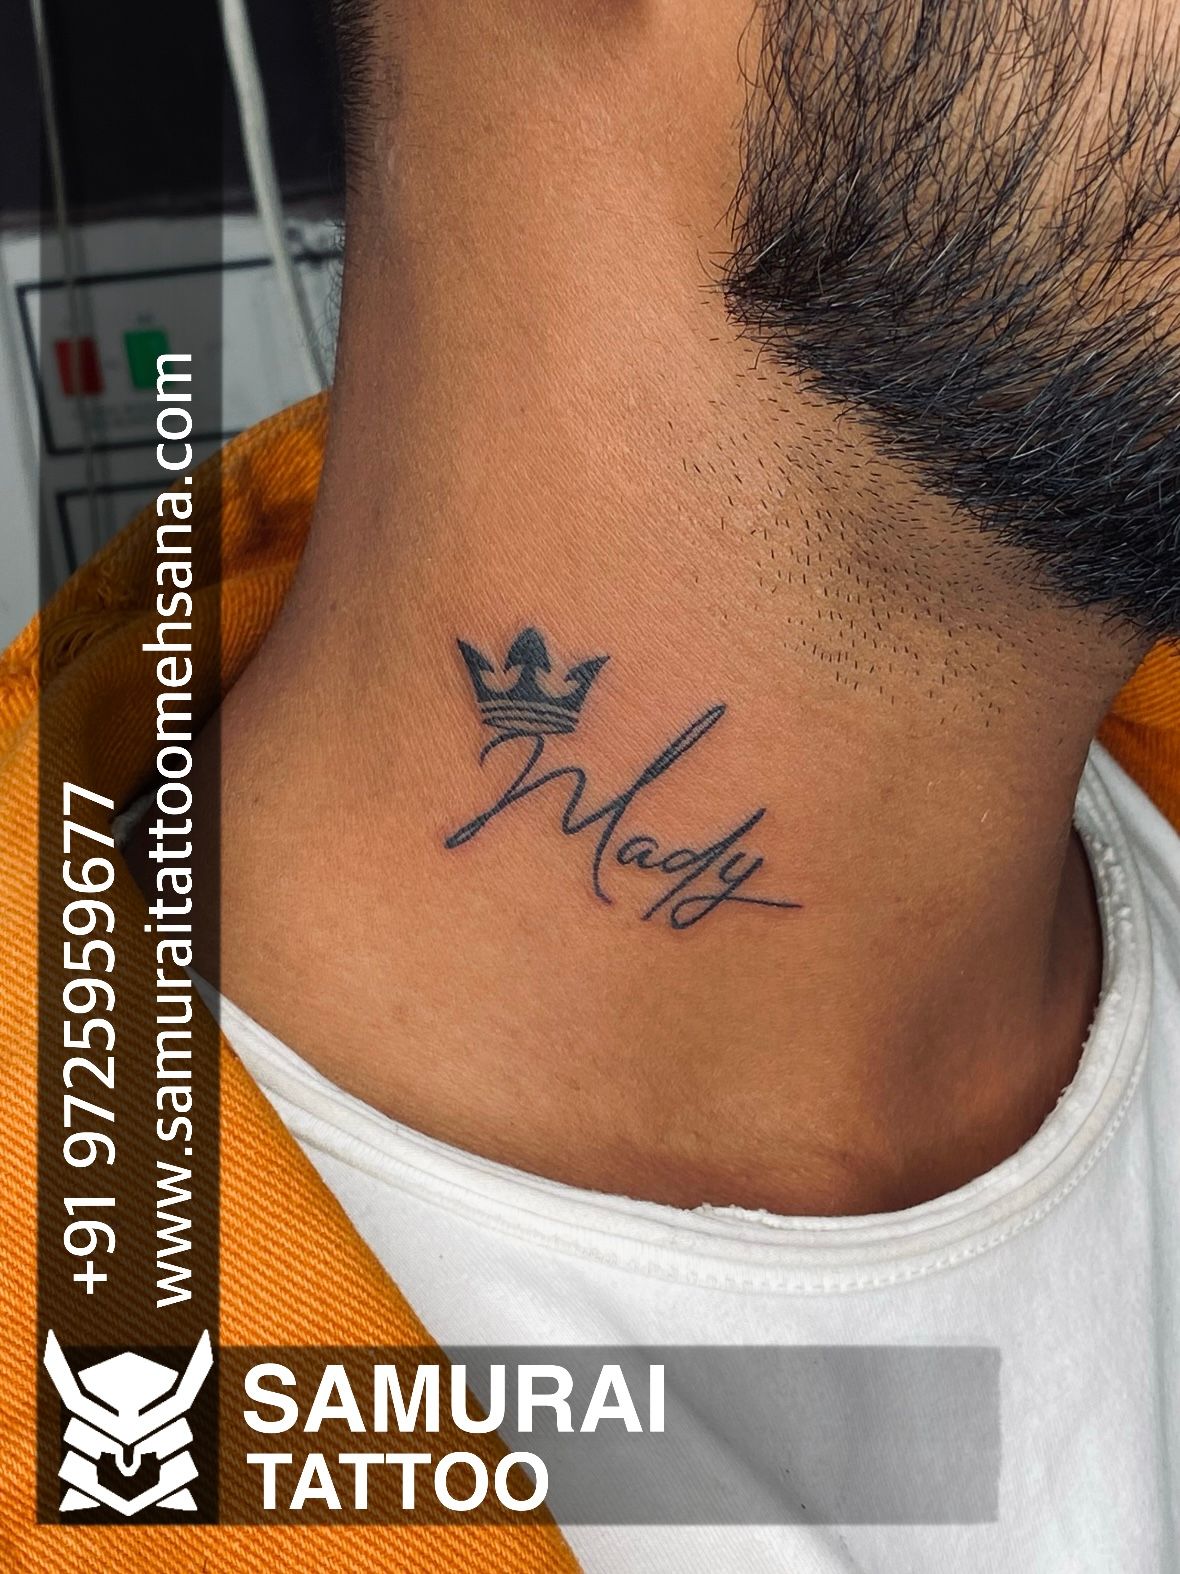 Tattoo uploaded by Vipul Chaudhary • rajani name tattoo |Rajani tattoo  |Rajani name tattoo ideas |Rajani tattoo ideas • Tattoodo